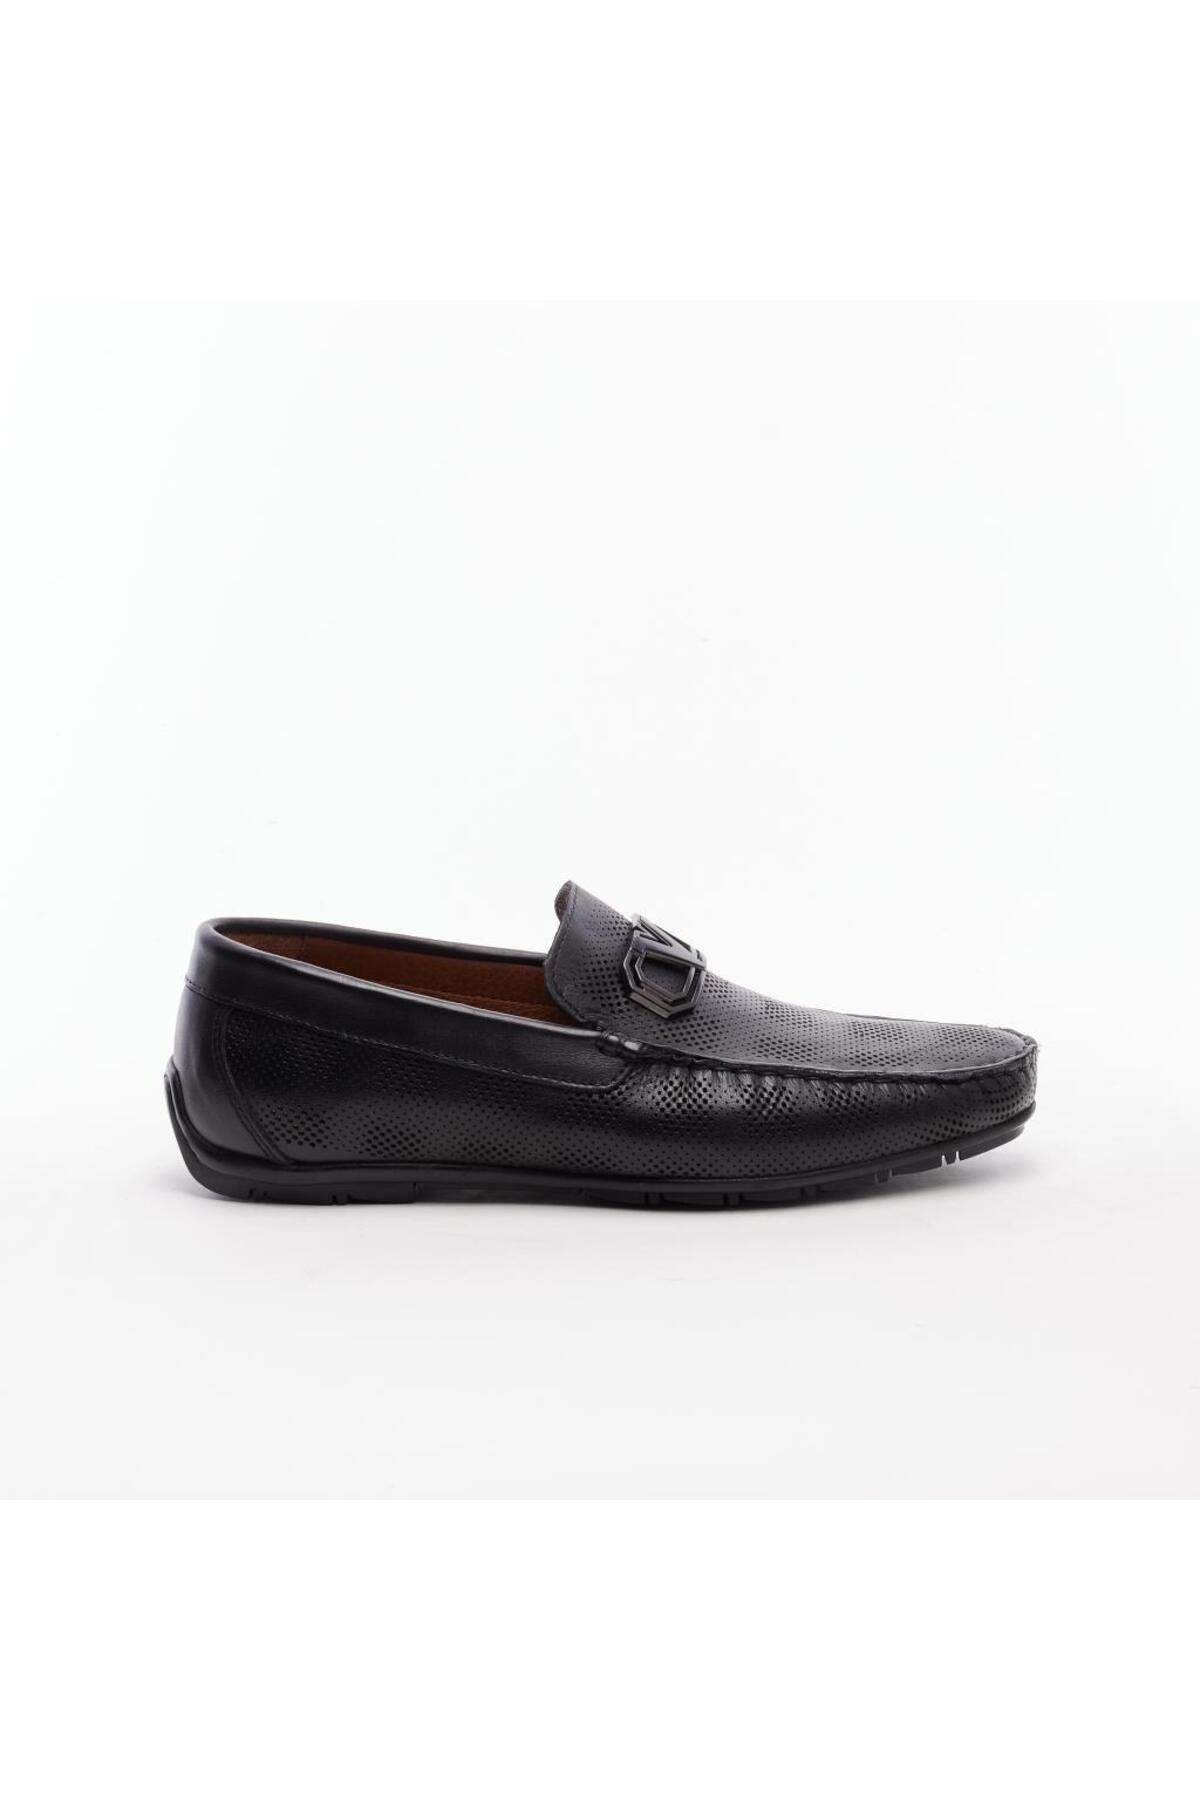 Derinet Hakiki Deri Tokalı Erkek Loafer Ayakkabı